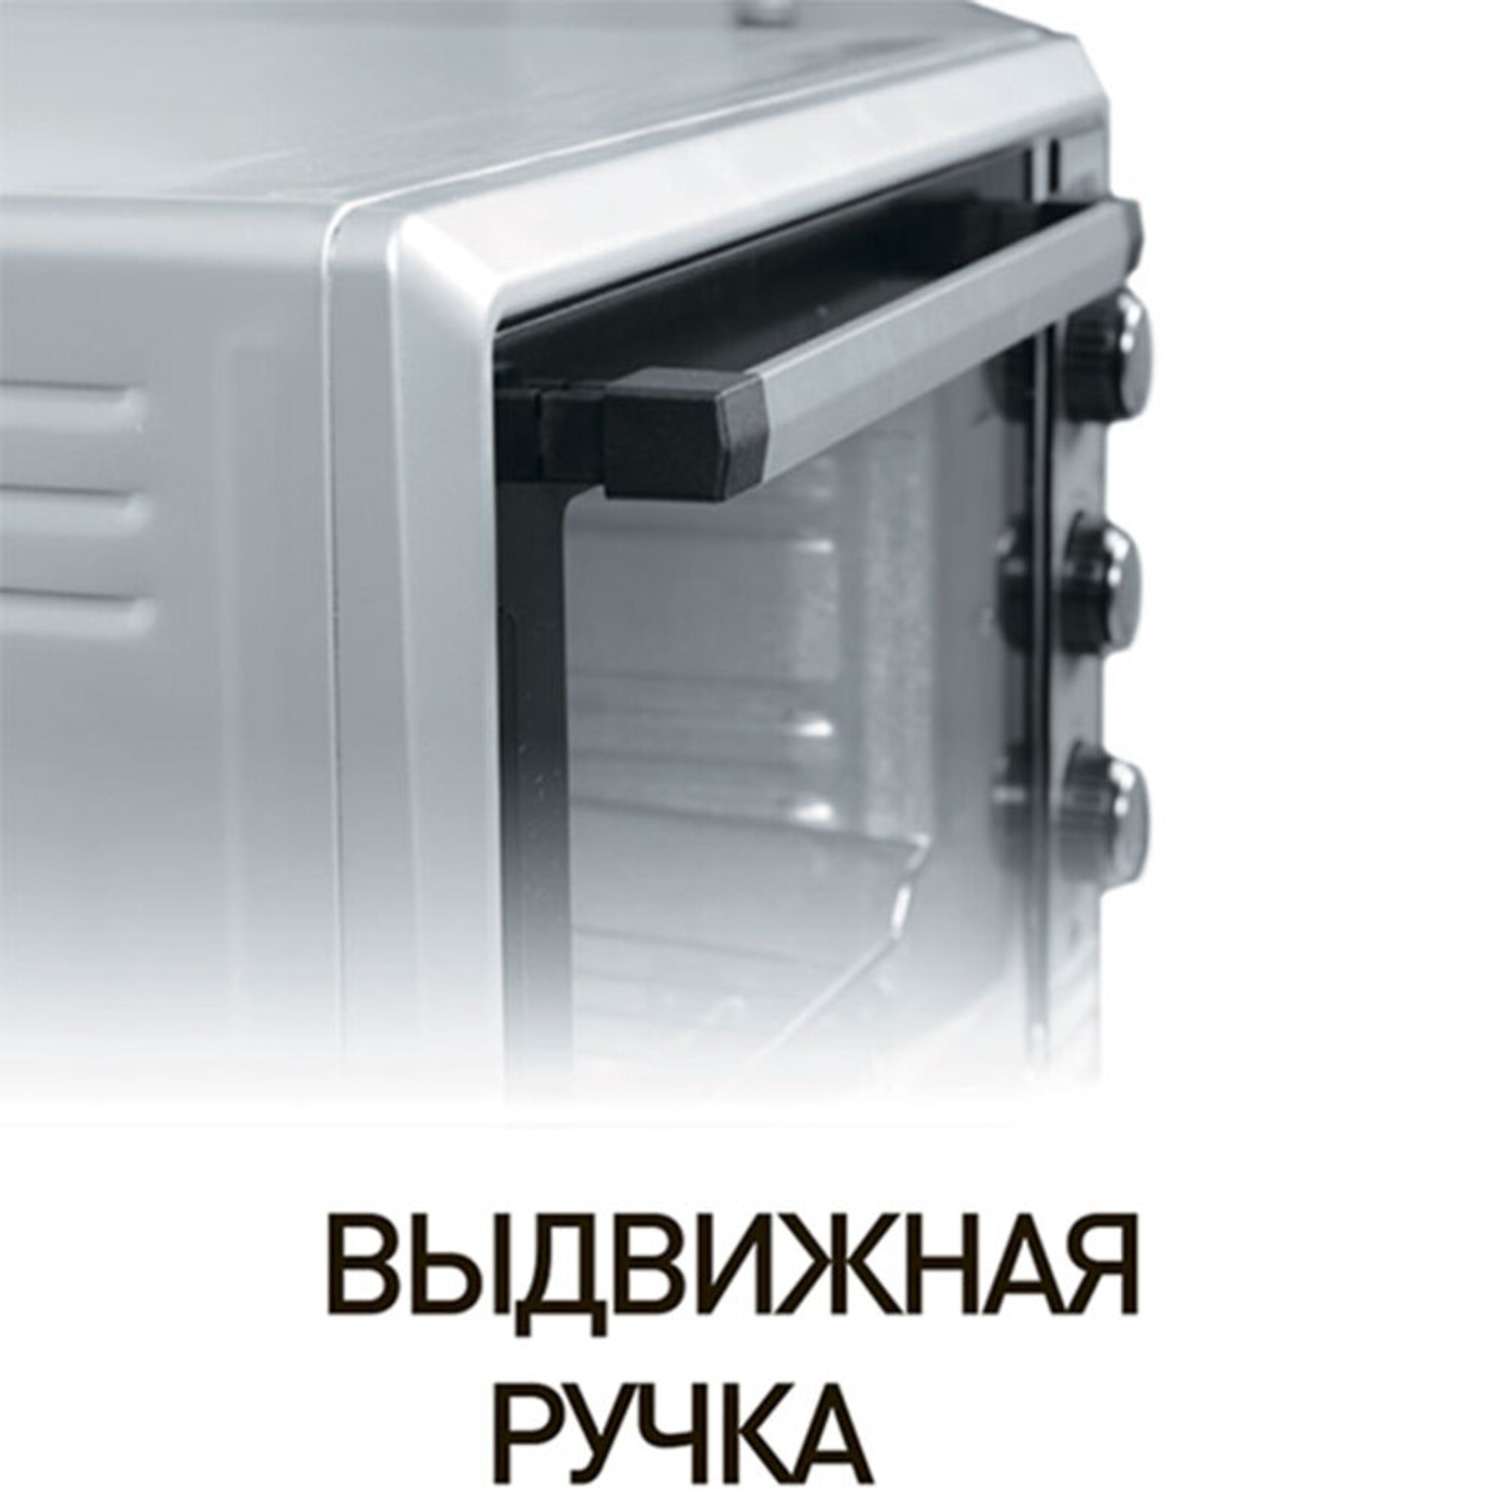 Мини-печь Delta электрическая белая с термостатом D-0550 1500 Вт 55 л - фото 3